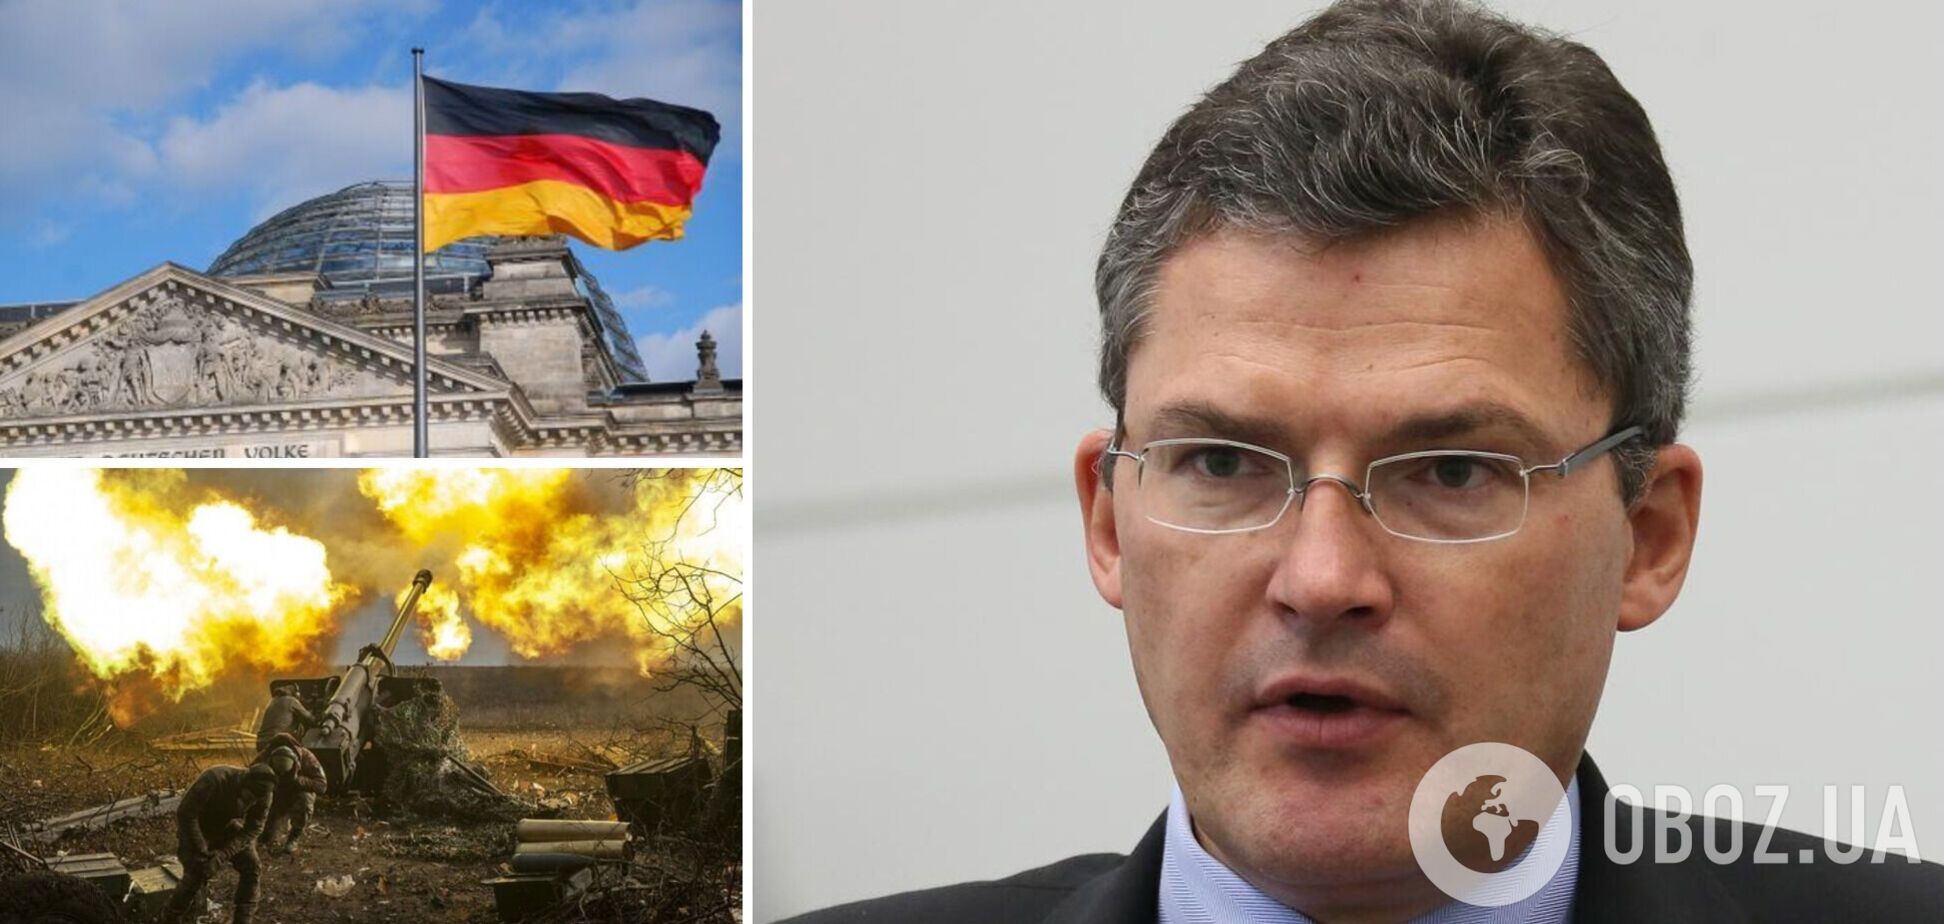 'Ми не перебуваємо в окопах': депутат Бундестагу відкинув критику ЗСУ за 'повільний' контрнаступ і закликав дати Україні більше зброї